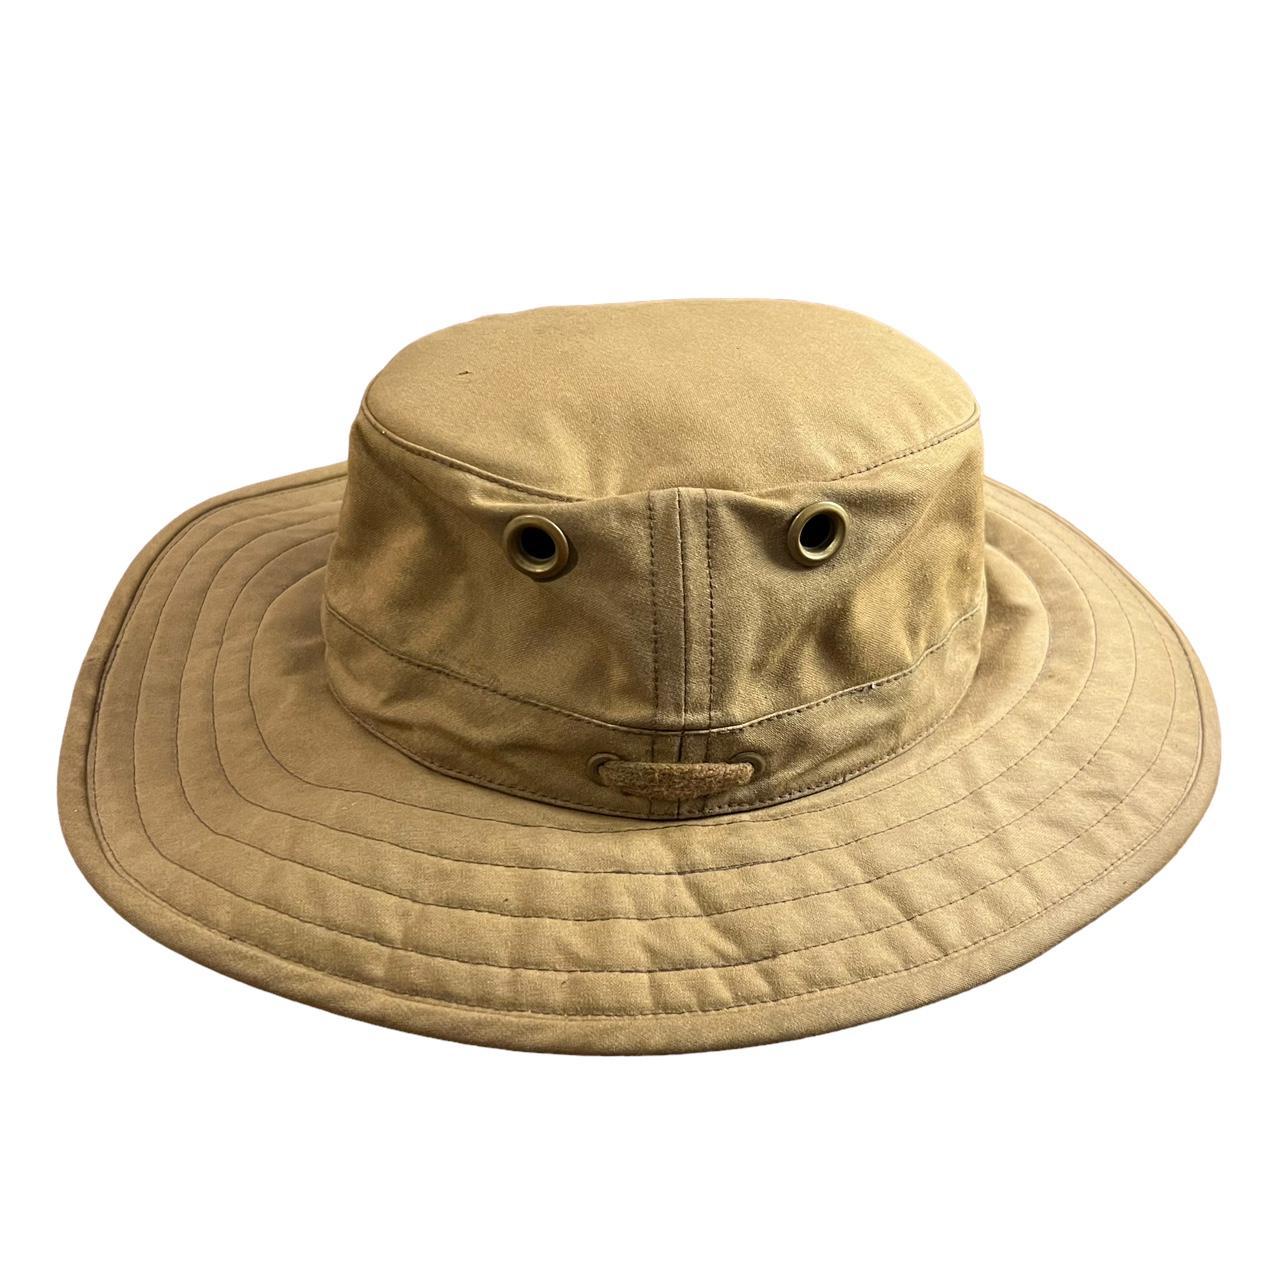 Tilley Outback Tan Men's Outdoor Hat size 7 3/8 - Depop